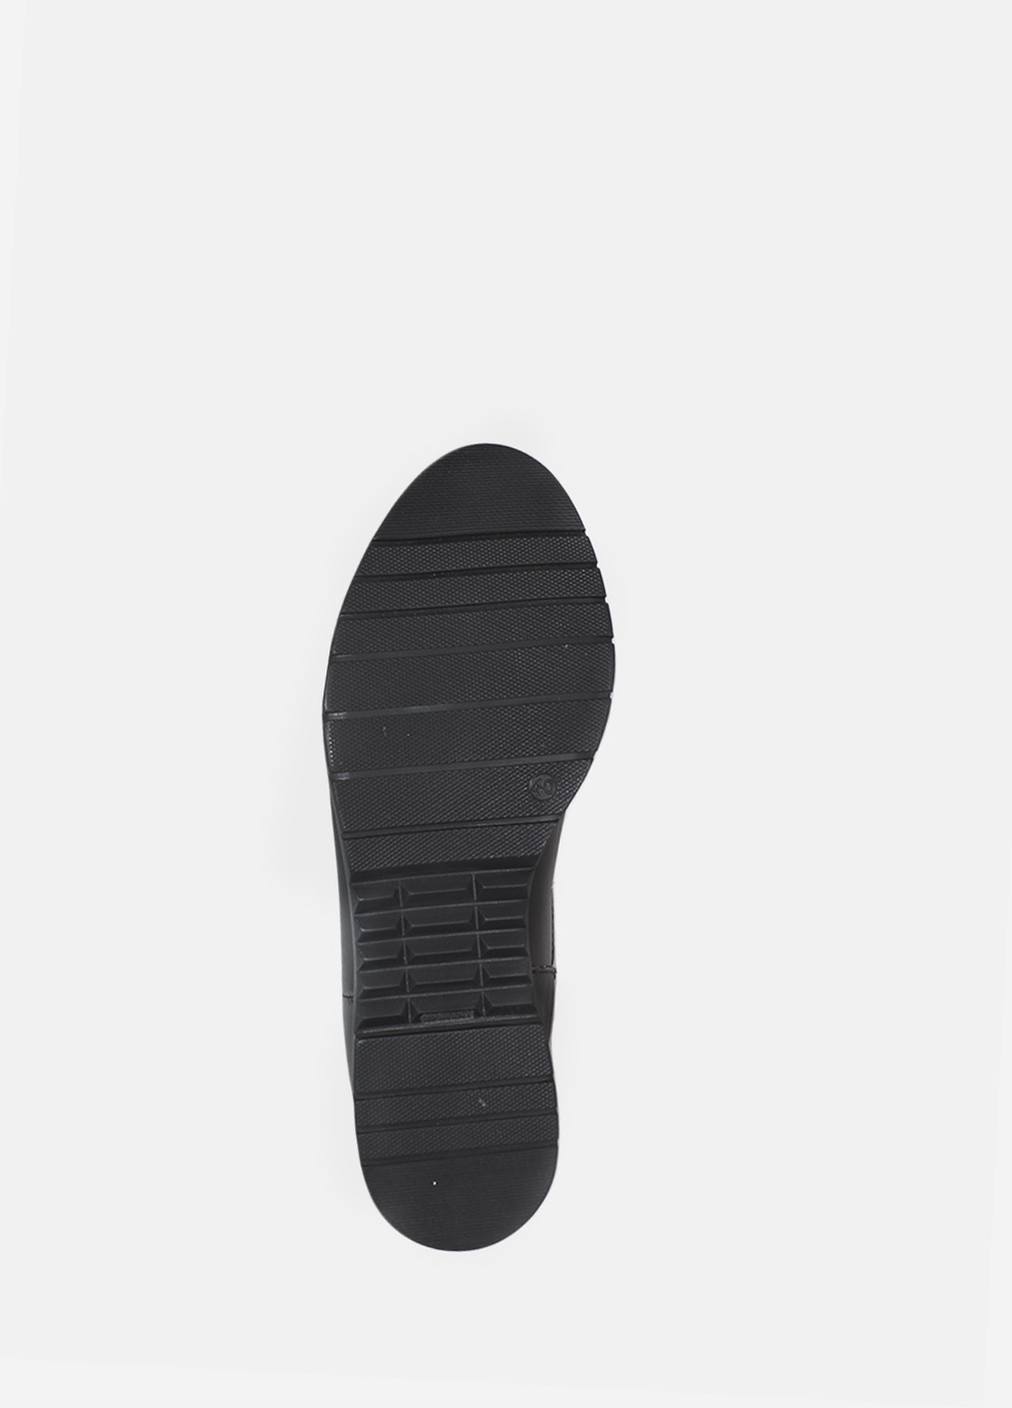 Зимние ботинки rg18-53056 черный Gampr